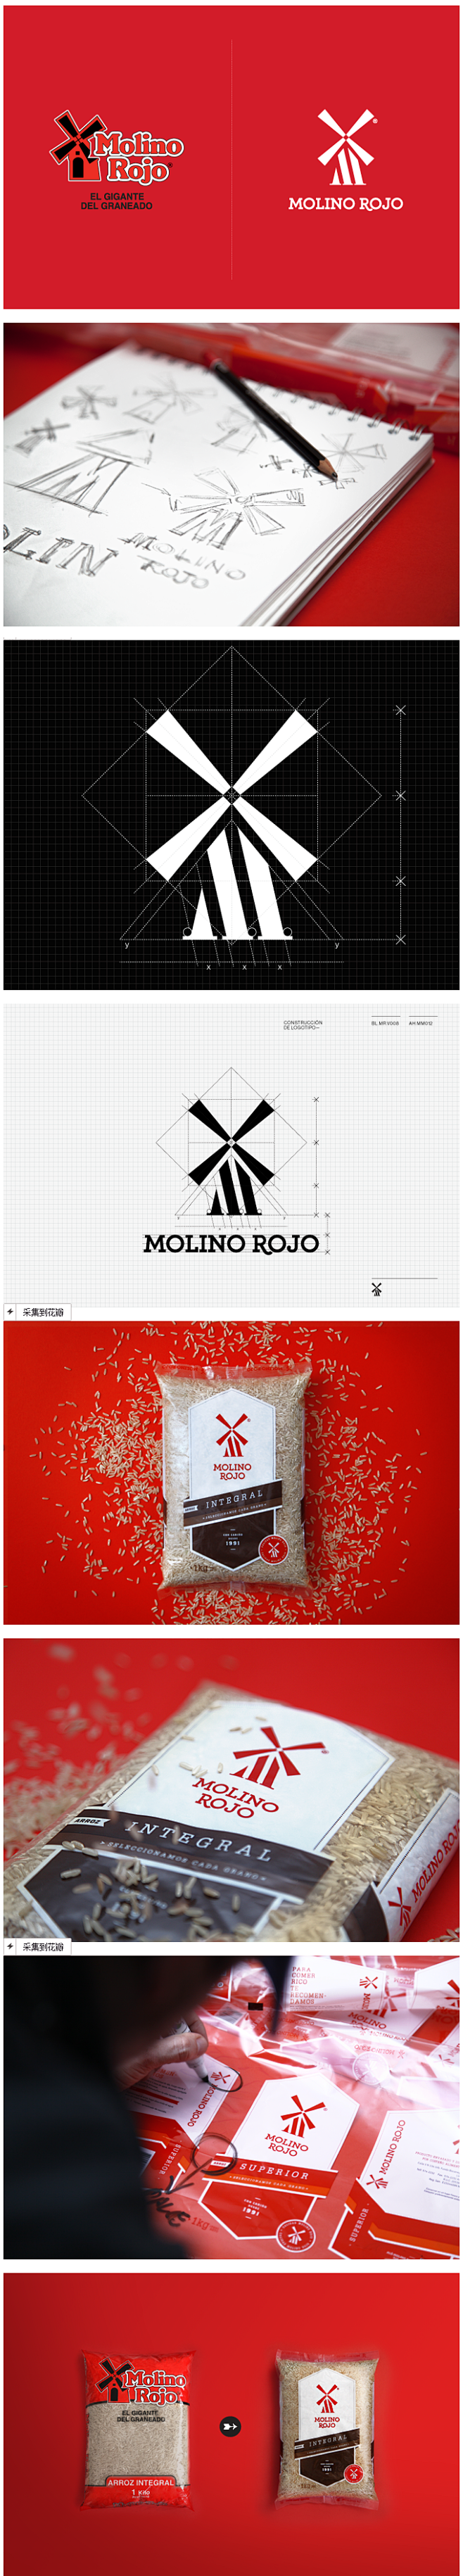 Molino Rojo糙米品牌形象升级 ...